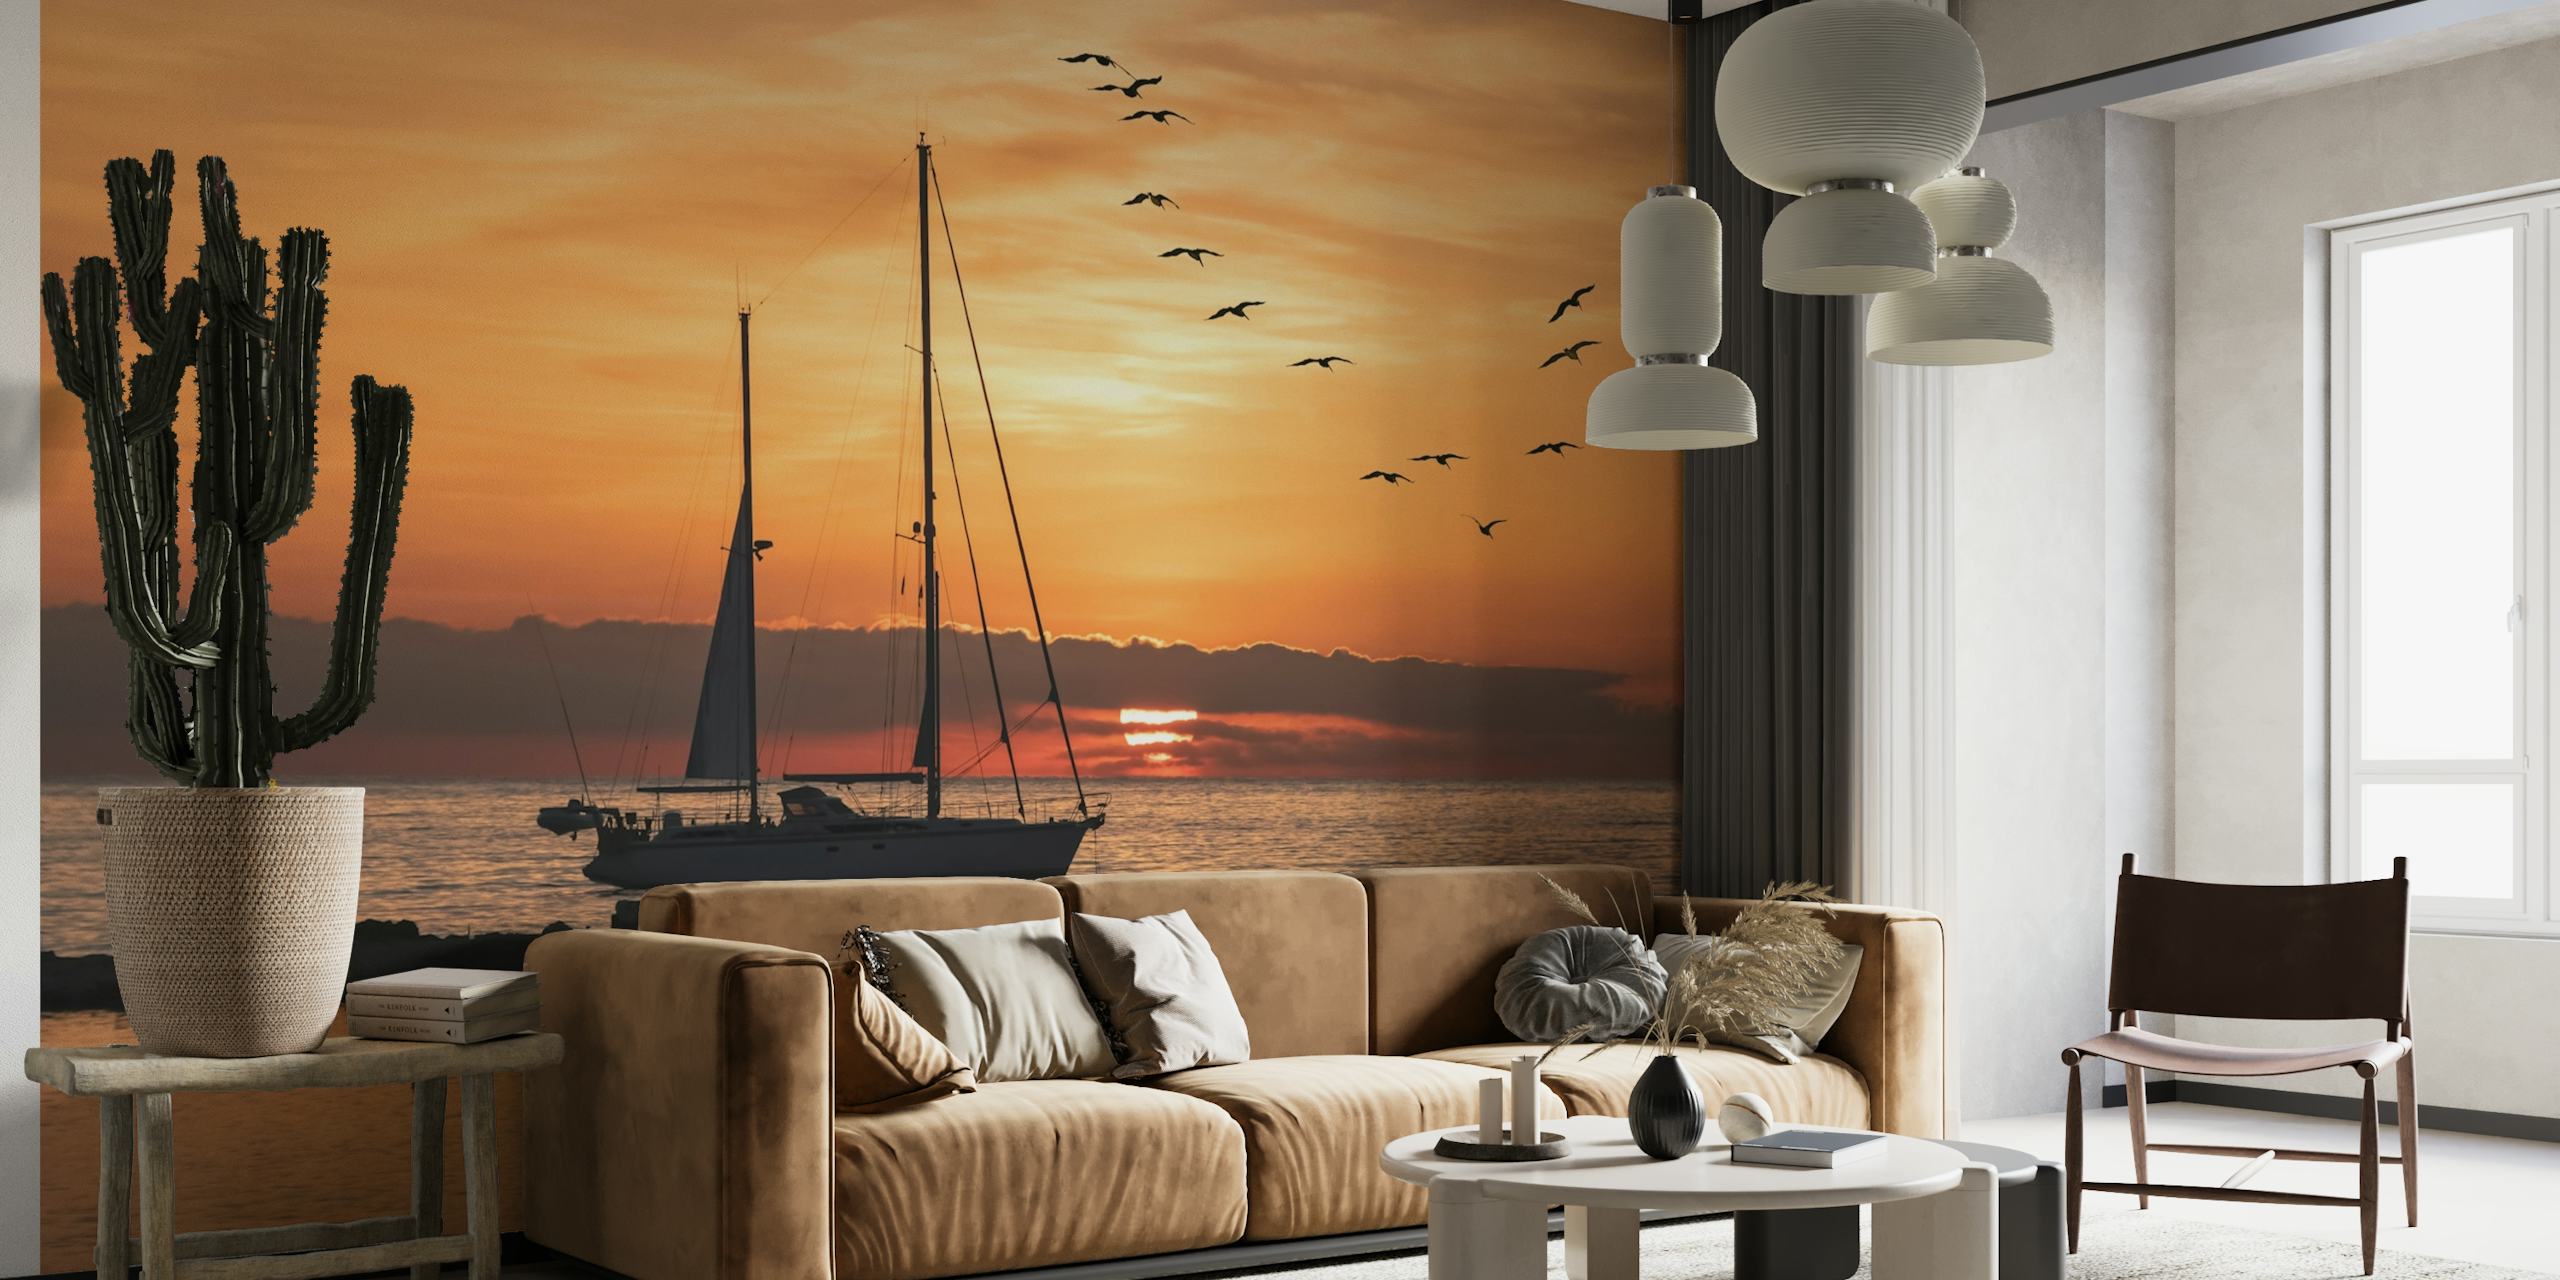 Sejlbådssilhuet mod en solnedgangsbagtæppe med flyvende fugle over havvægmaleriet